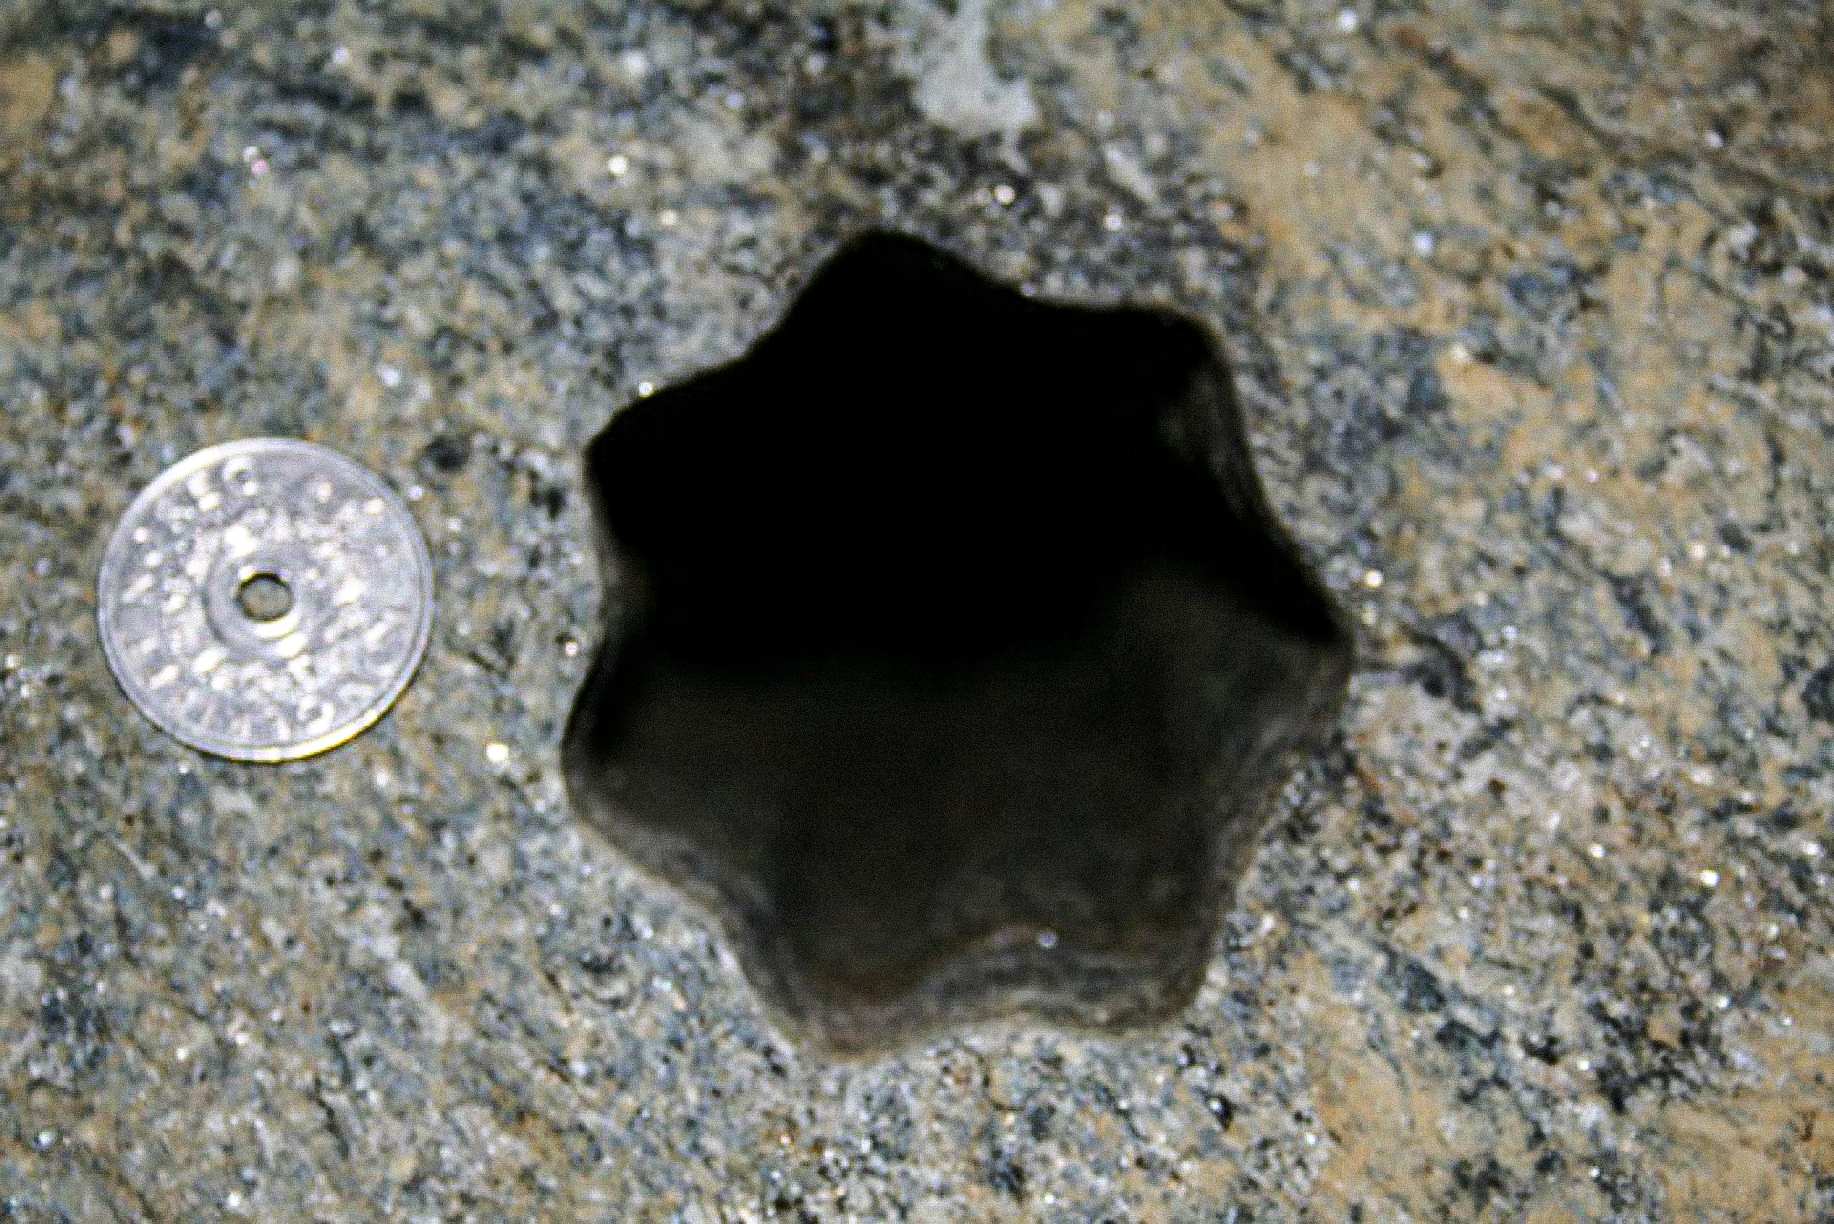 Šią žvaigždės formos skylę (su septyniomis pusėmis) rangovai rado 30 m. lapkričio 2007 d., penktadienį Voldoje, Norvegijoje. Norvegijos 5 kronų monetos skersmuo yra 25 mm. Skylės skersmuo apie 65-70 mm.